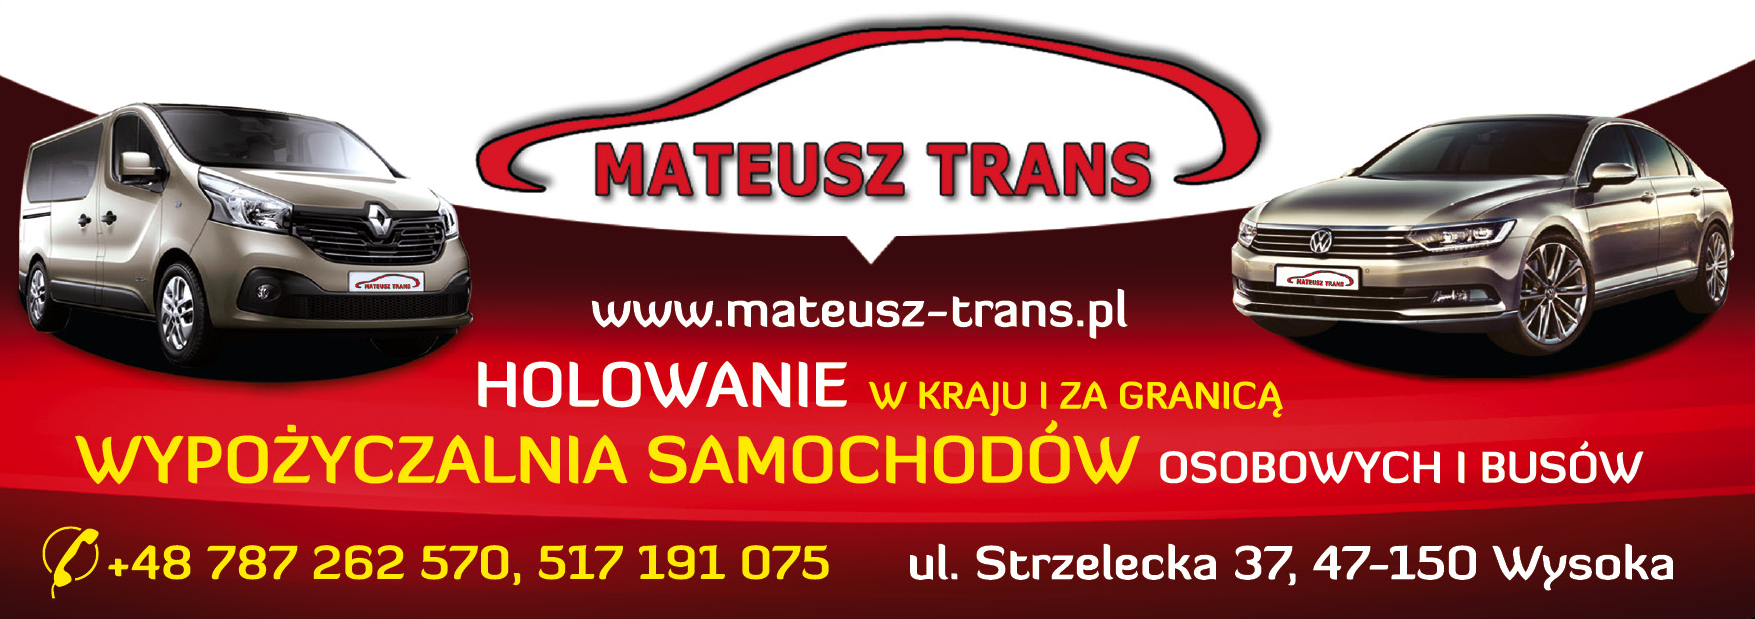 MATEUSZ TRANS Wysoka Wypożyczalnia Samochodów Osobowych i Busów / Holowanie w Kraju i Za Granicą